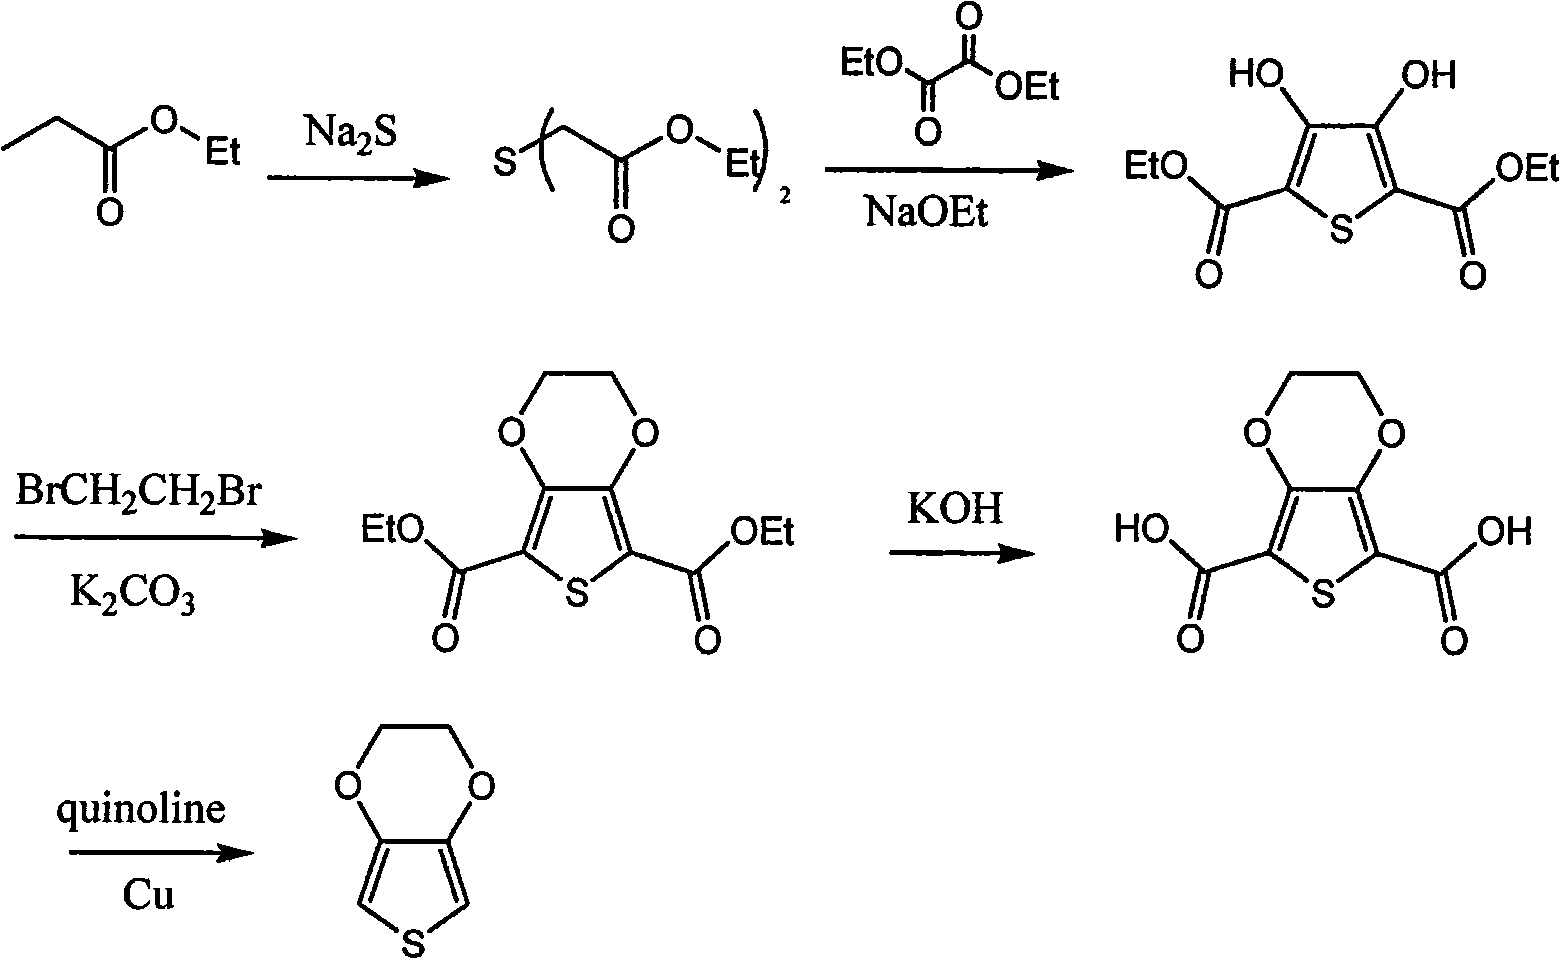 Synthetic process of 3, 4-ethylenedjoxythiophene